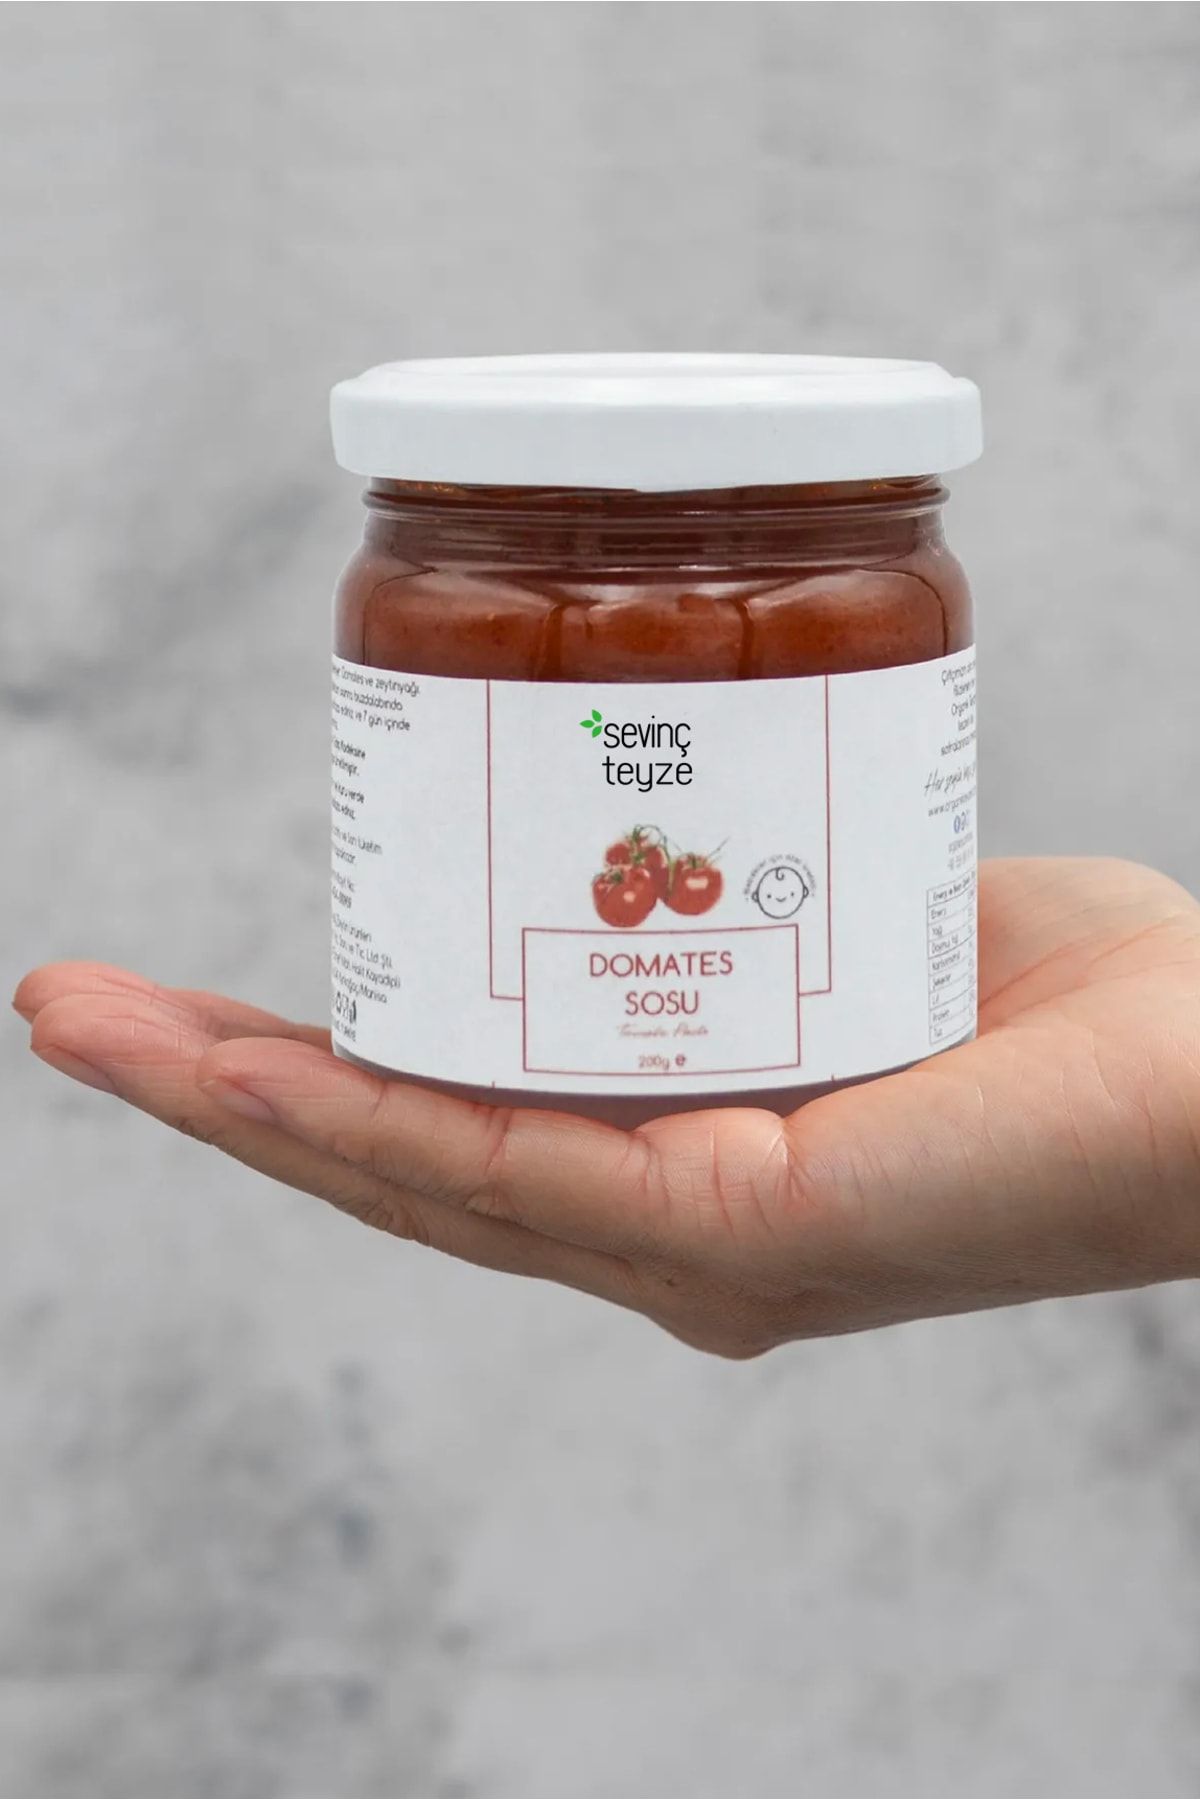 Organik Teyze Sevinç Teyze Bebek Domates Sosu, Baby Tomato Sauce 200g (TUZSUZ)